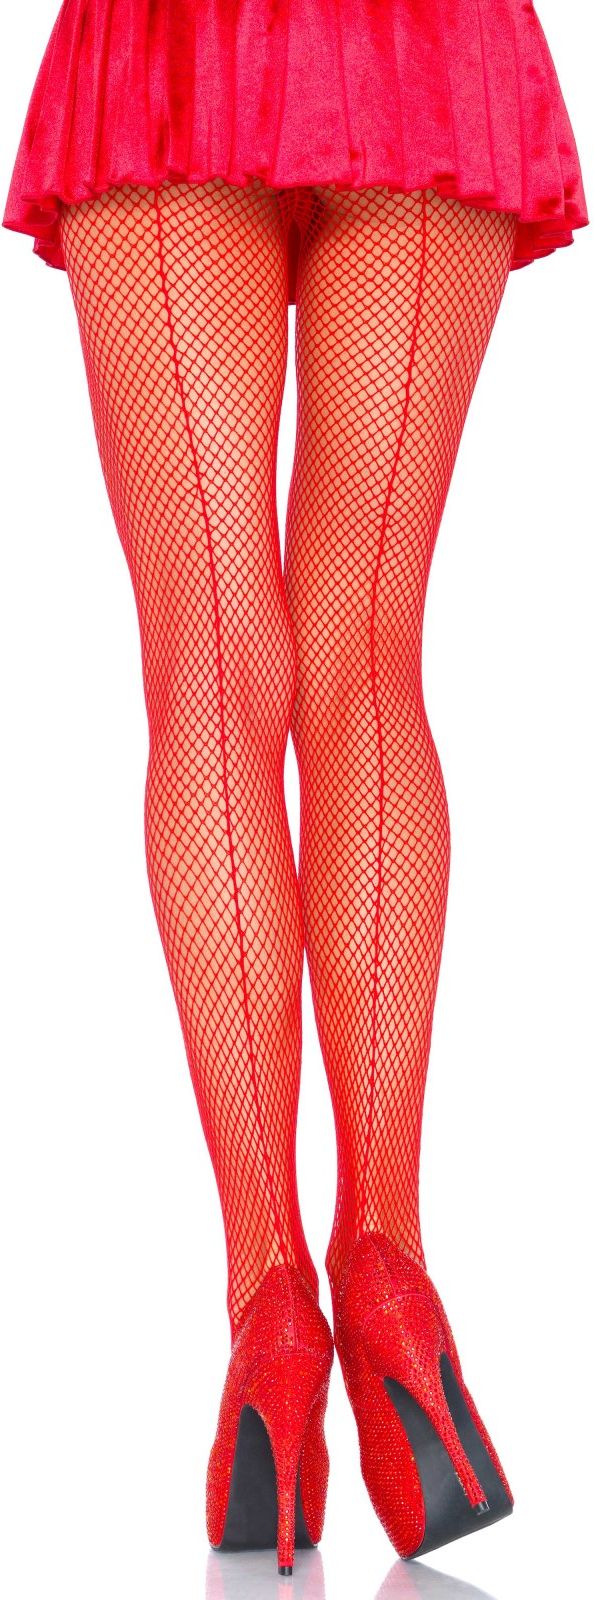 Rode visnet panty met elegante naad